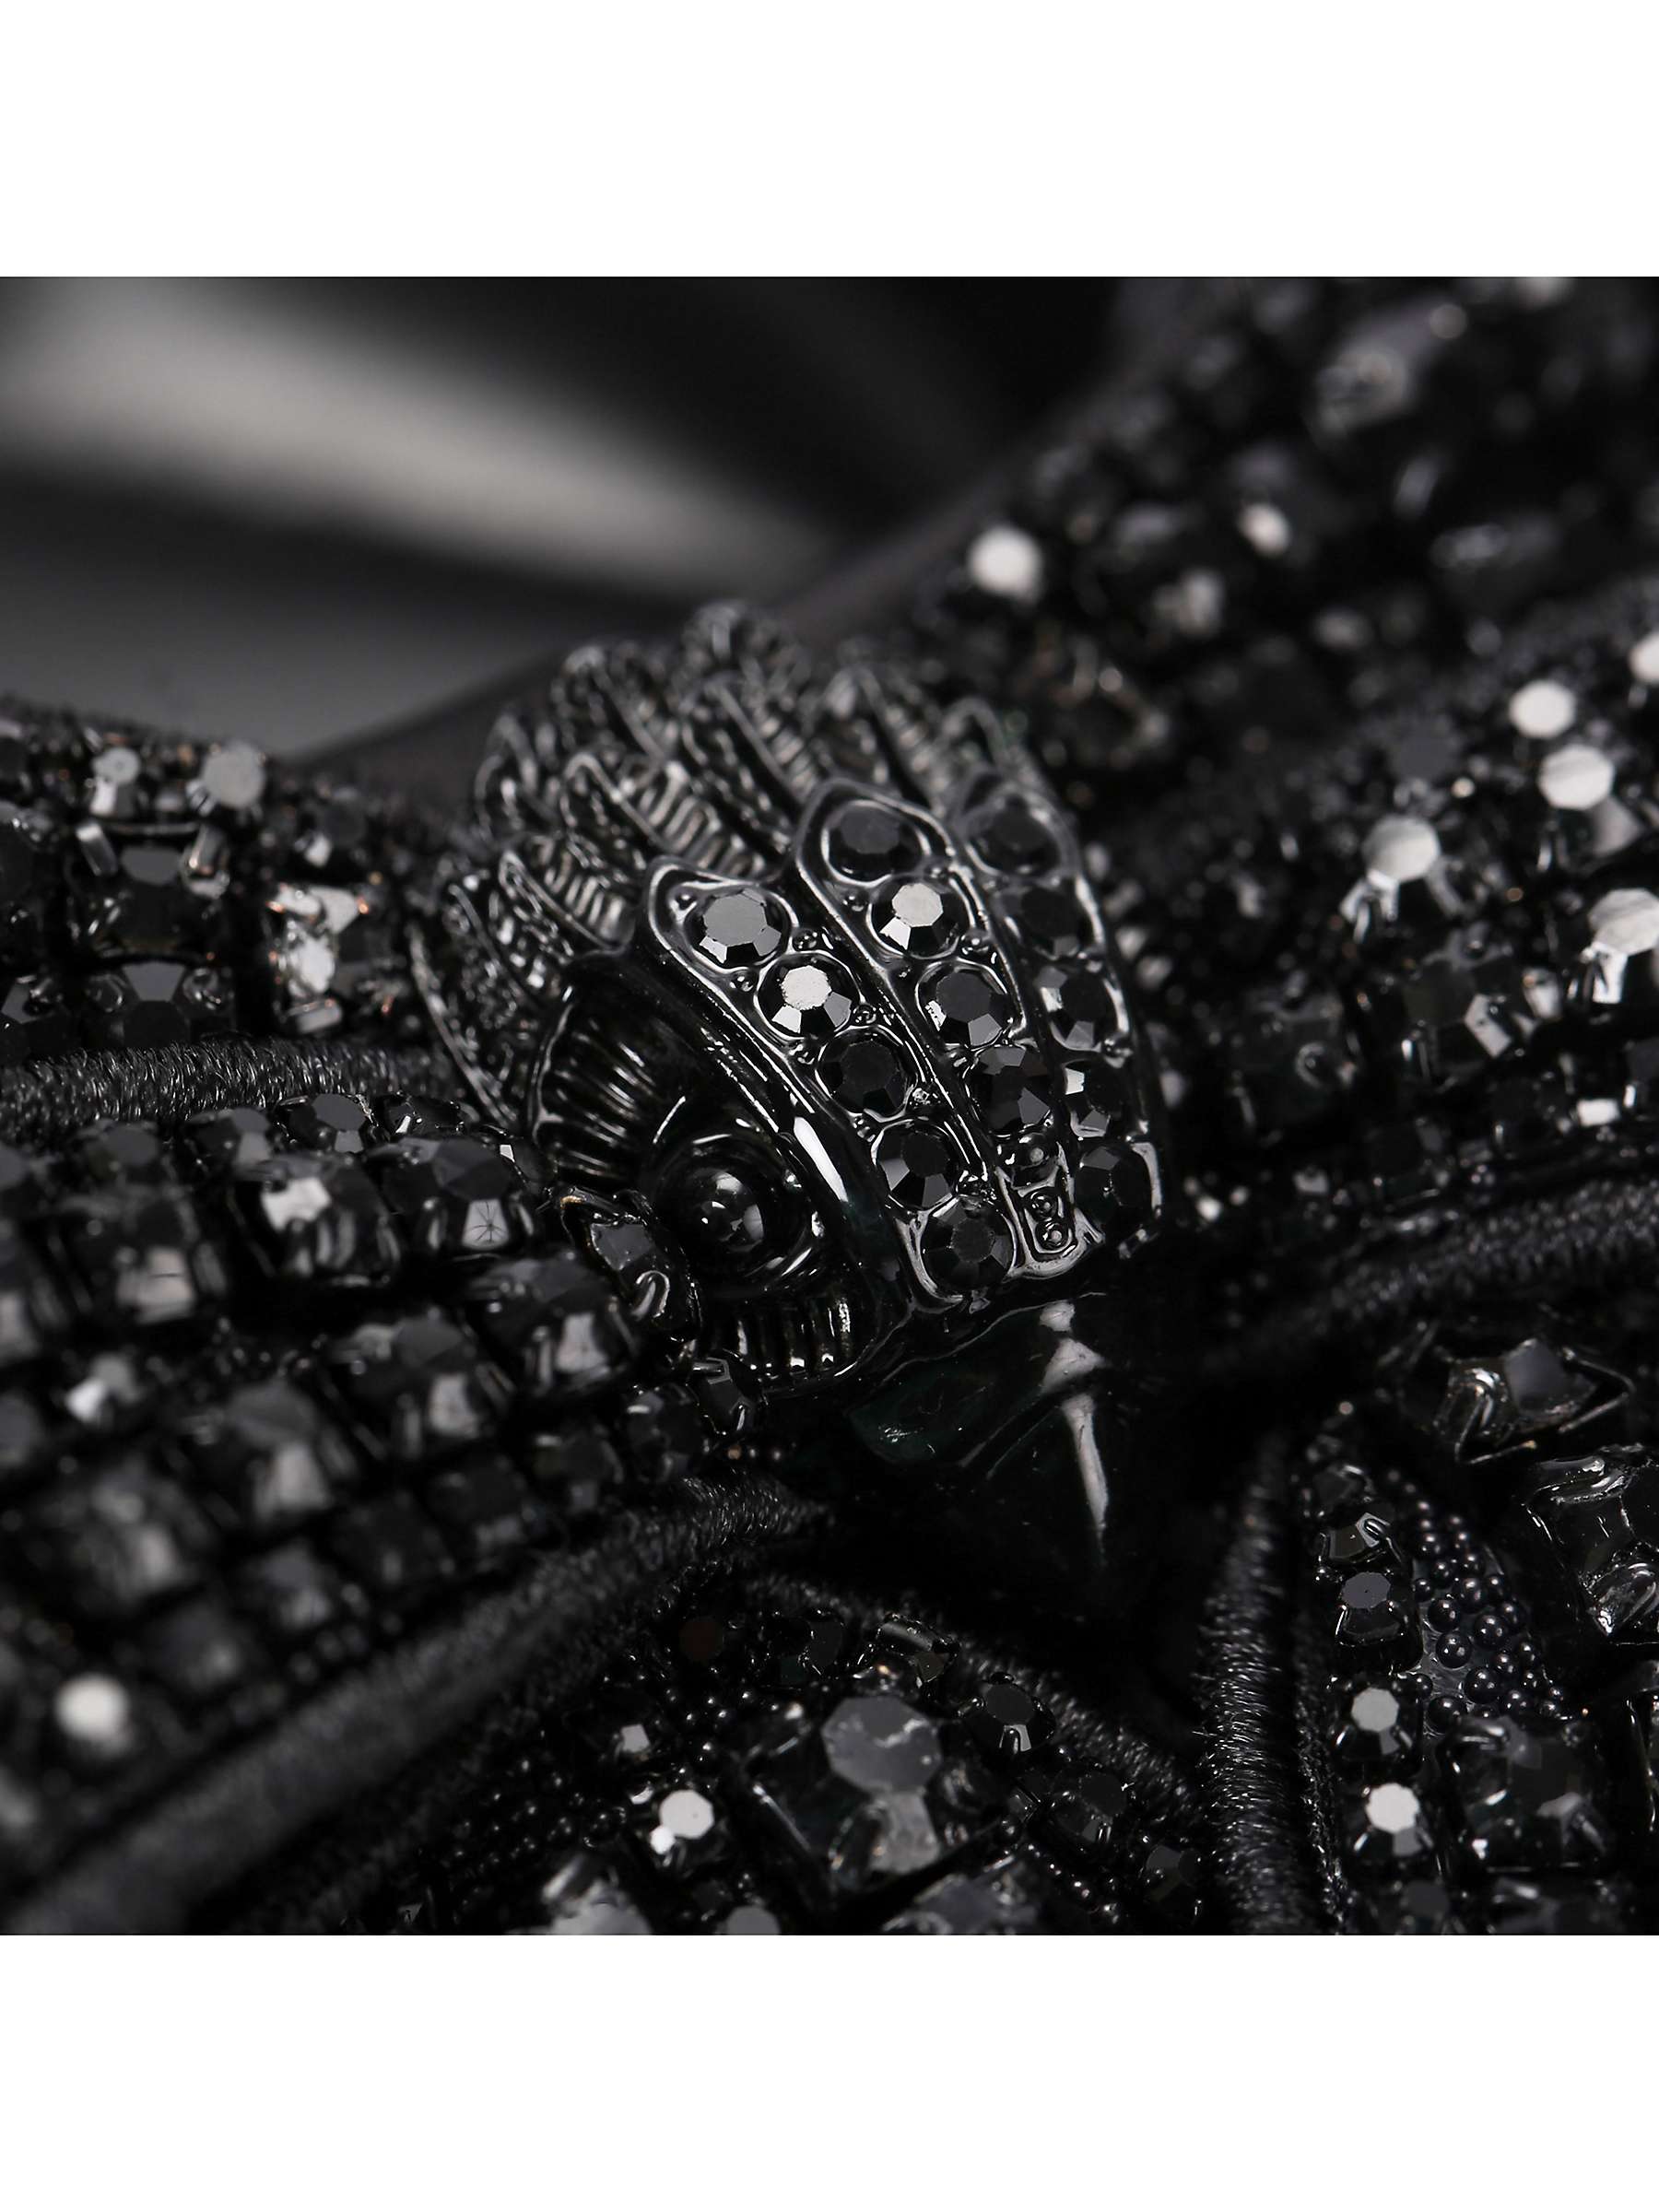 Buy Kurt Geiger London Belgravia Crystal Bow Embellished Slingback Court Shoes, Black Online at johnlewis.com